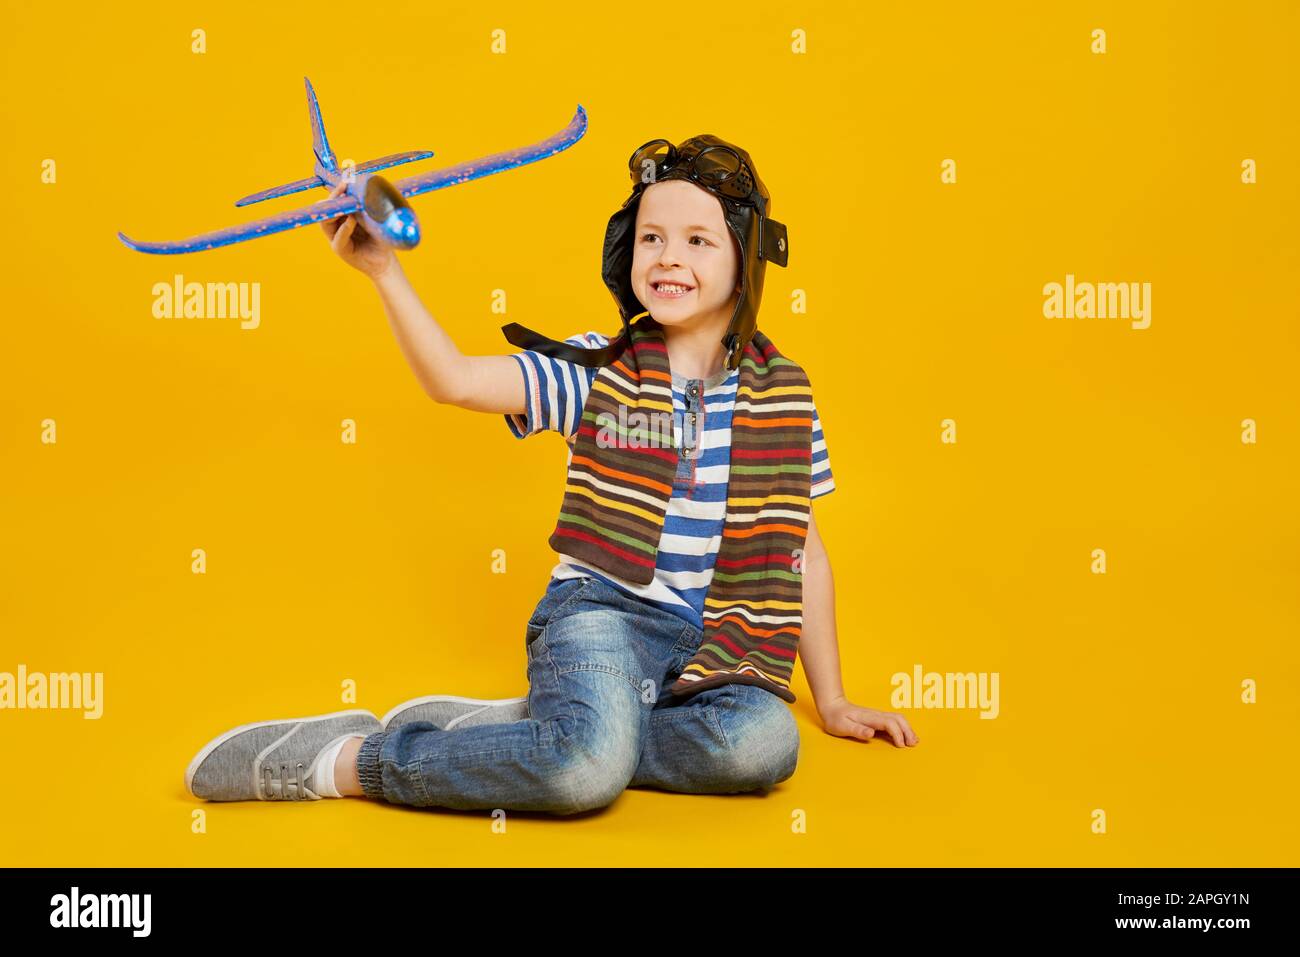 Ragazzo sorridente che gioca con l'aereo giocattolo Foto Stock